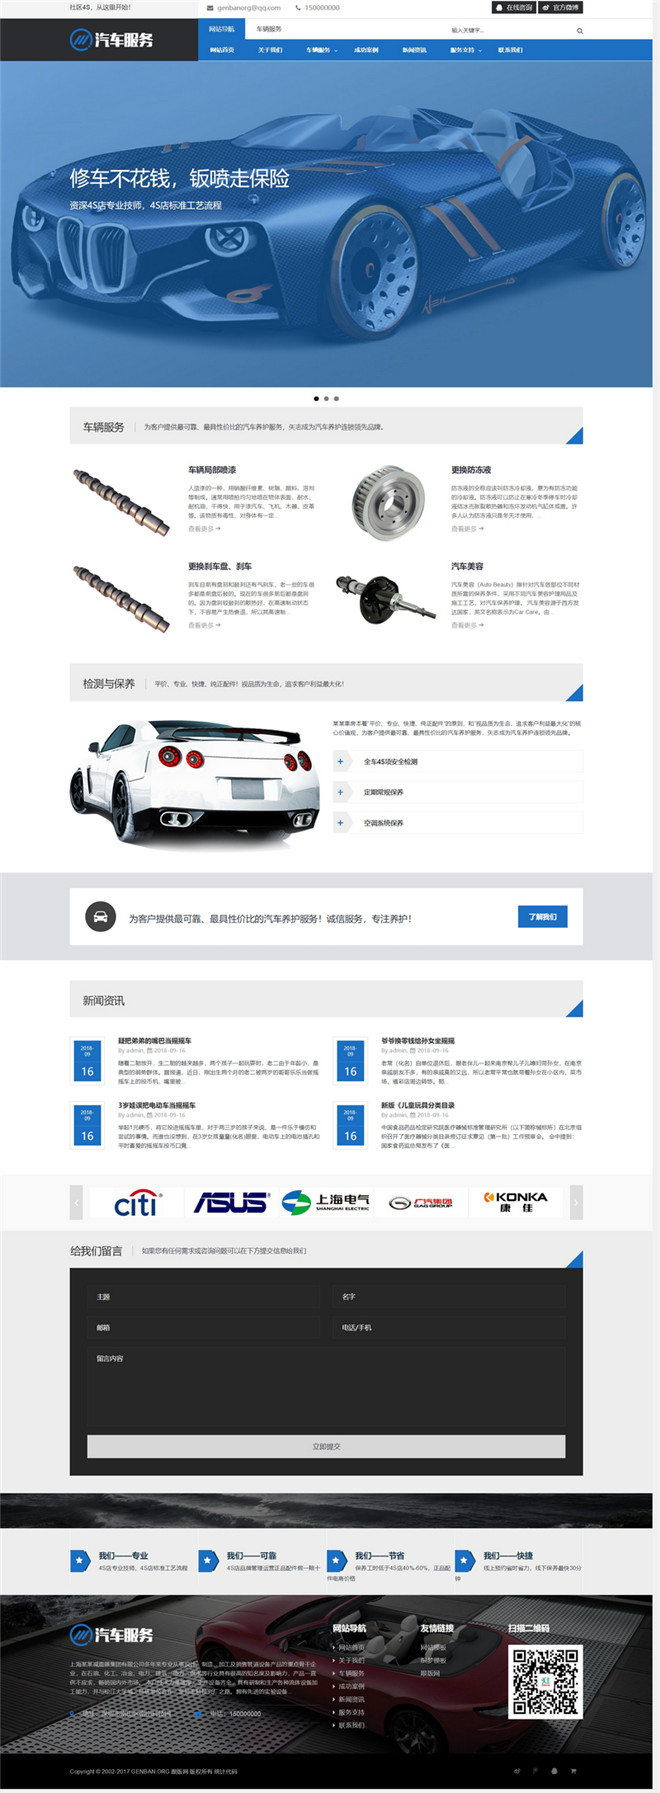 汽车保养服务网站WordPress模板含手机站演示图